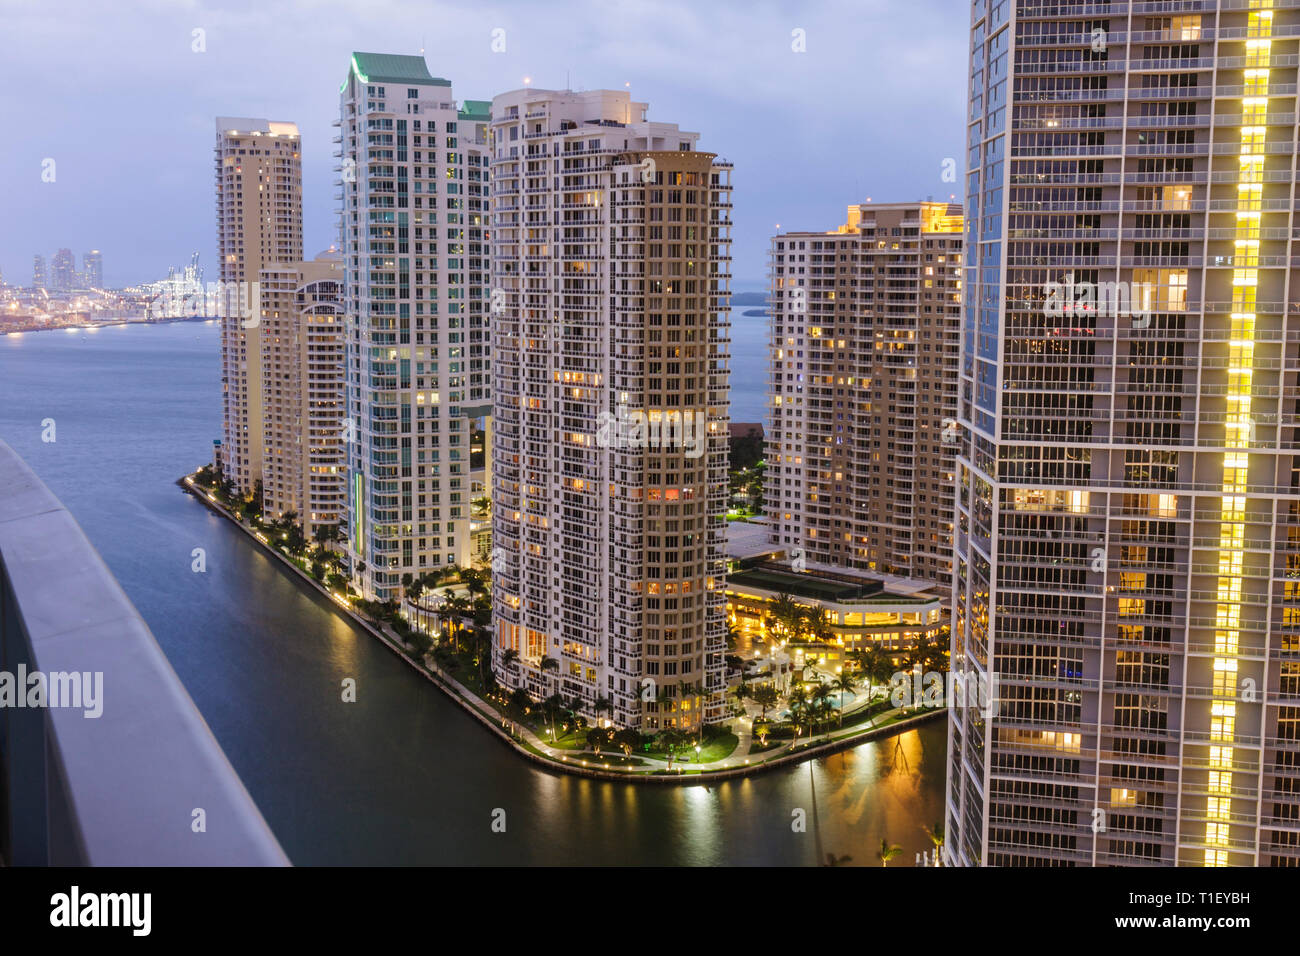 Miami Florida, Brickell Key, vista da Epic, hotel, edifici, skyline della città, condomini, grattacieli, grattacieli alti grattacieli costruire edifici ci Foto Stock